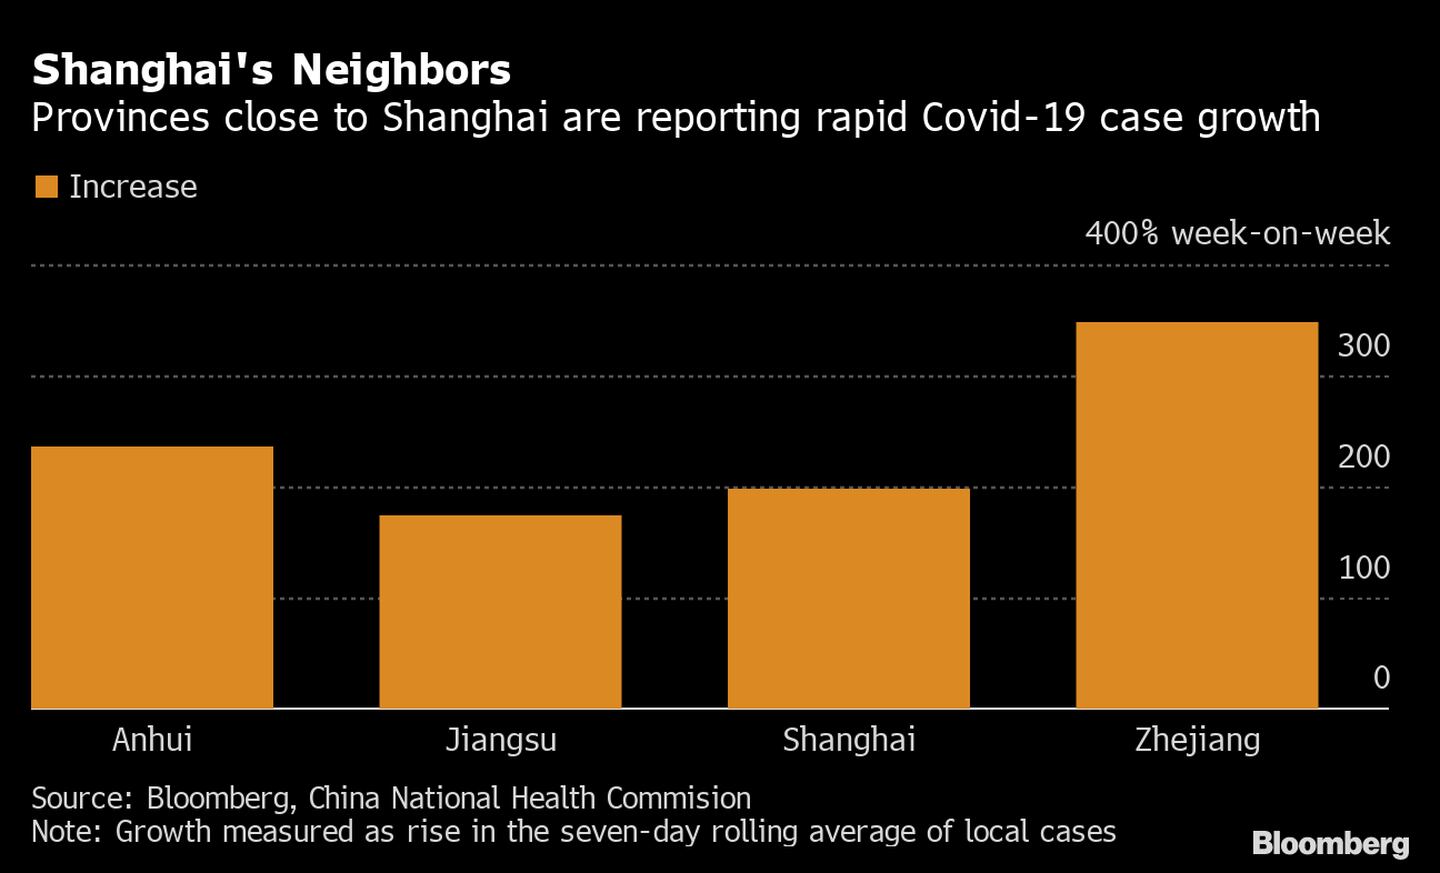   Percentual do aumento do número de casos a cada semana em diversas cidades da Chinadfd